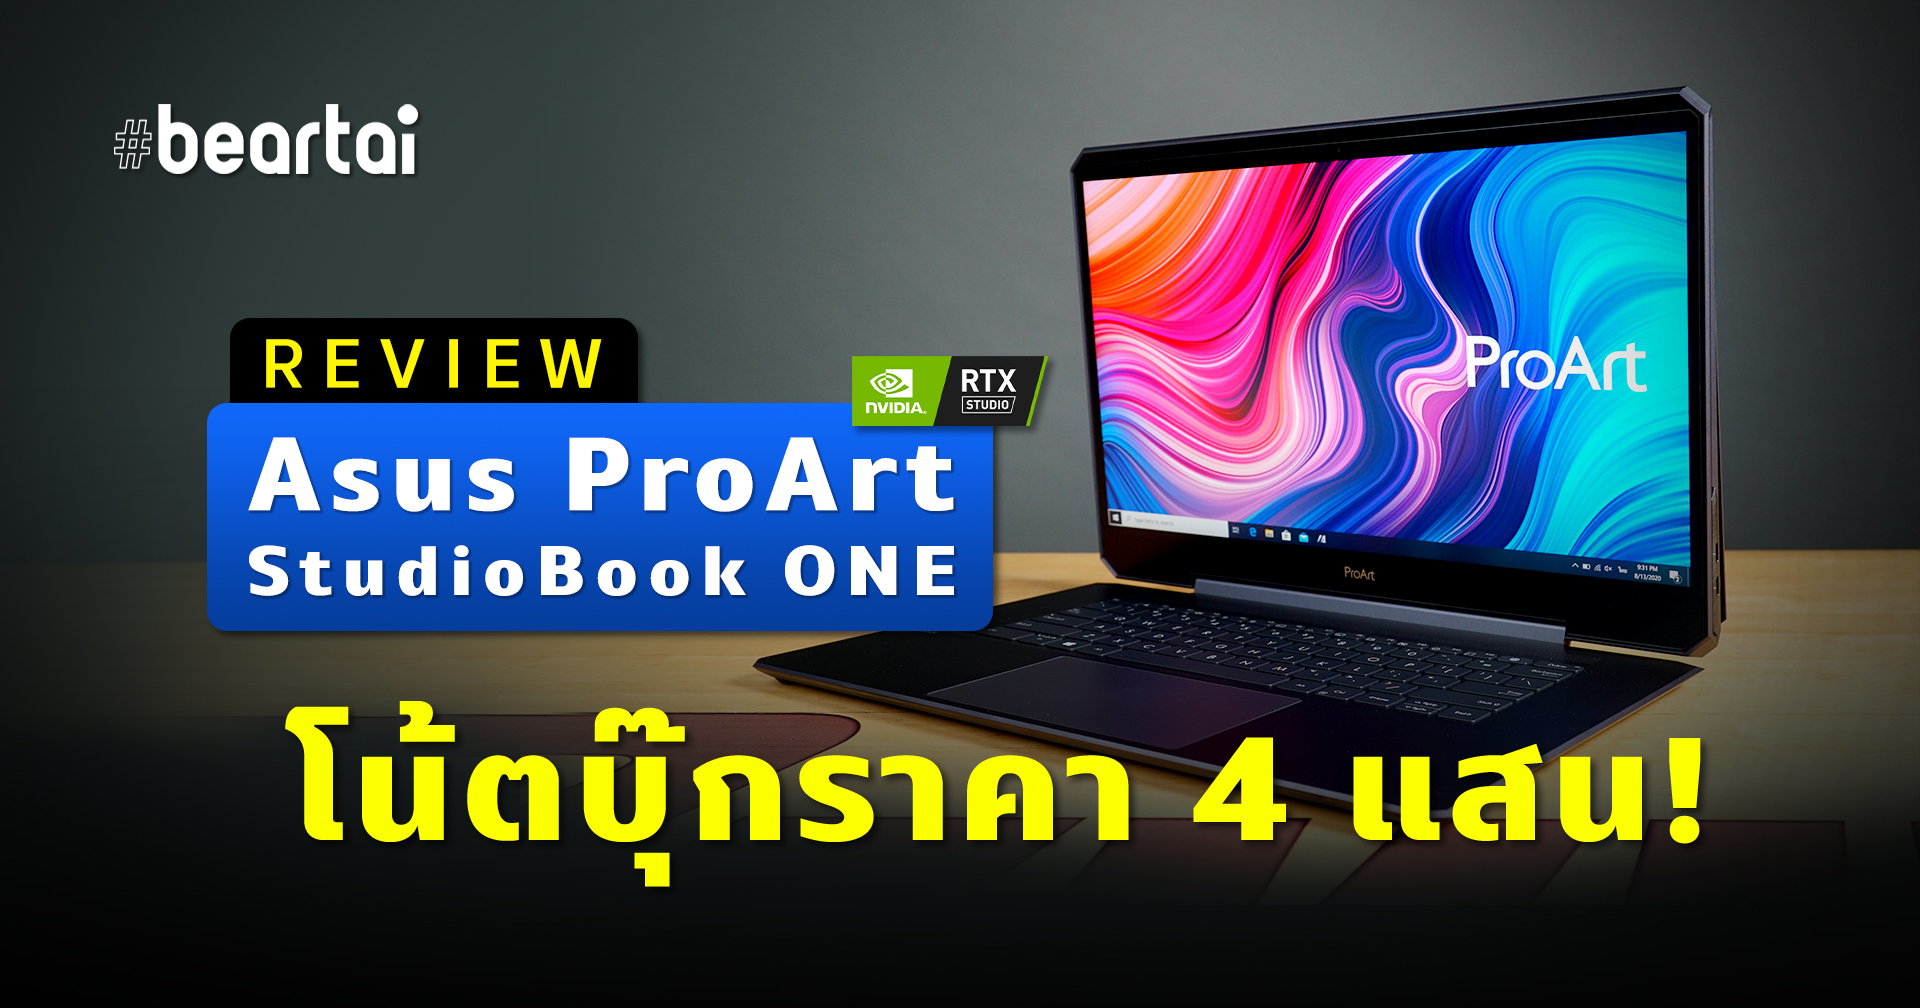 รีวิว Asus ProArt StudioBook ONE (W590) ราคาสี่แสน สุดจริง เร็วจริง ฟินจริง